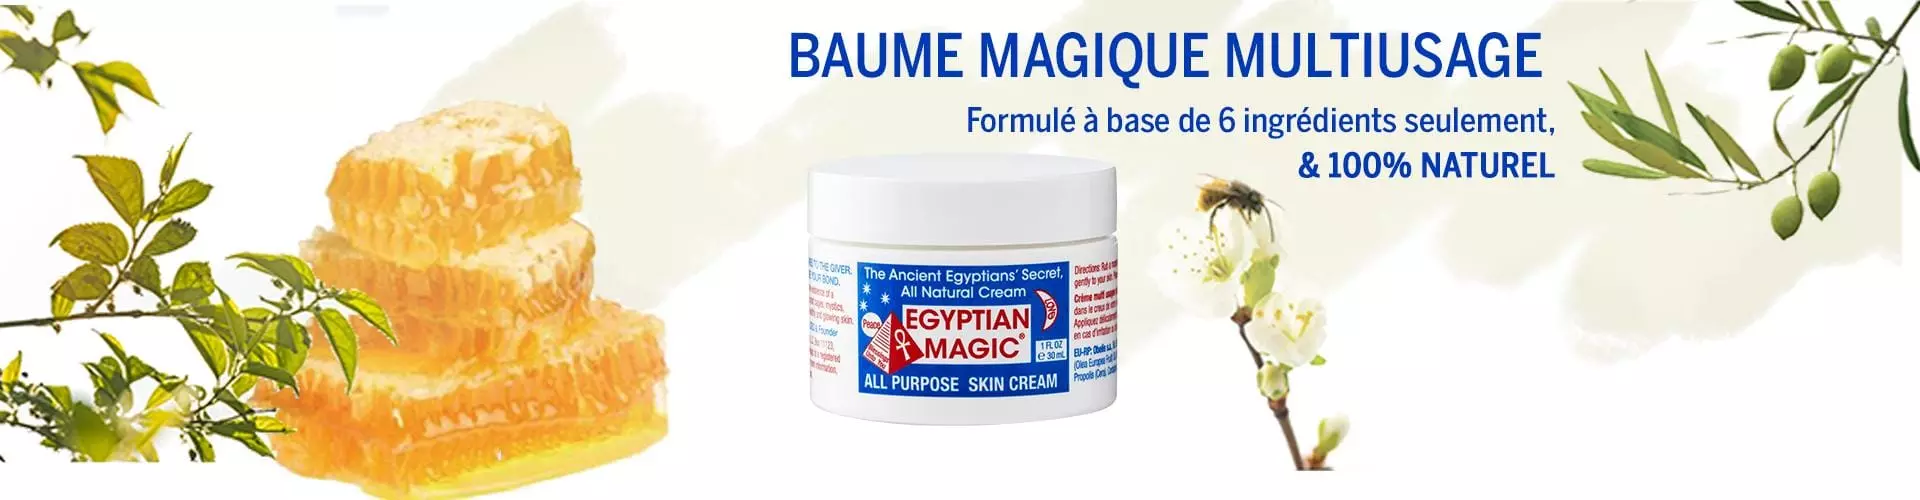 Egyptian Magic - baume magique multi usage